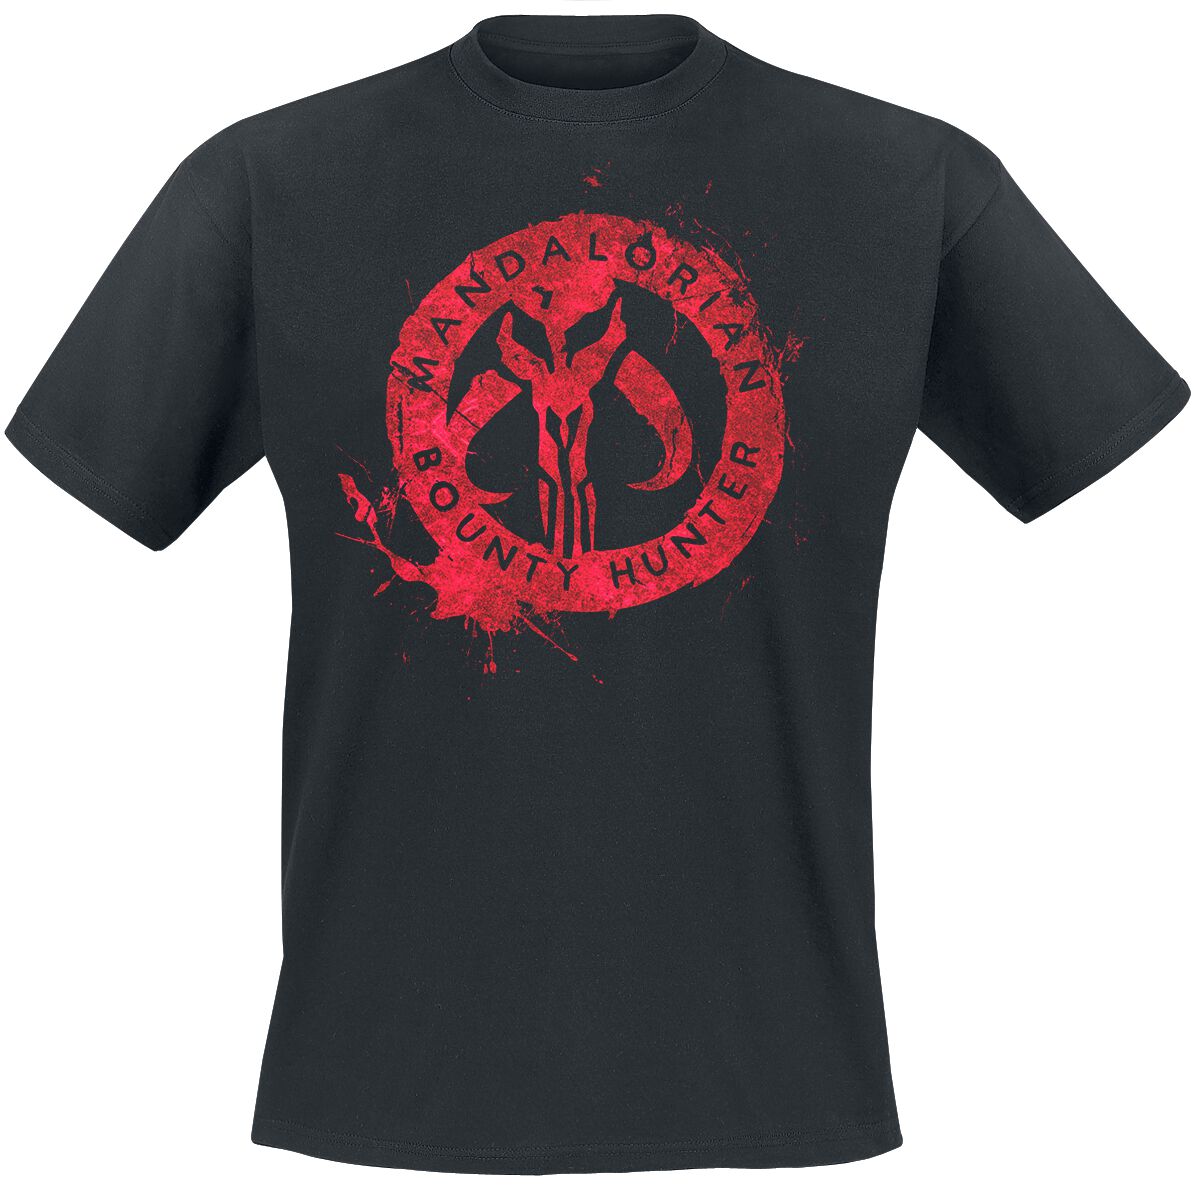 T-Shirt Manches courtes de Star Wars - The Mandalorian - Logo Rouge - S - pour Homme - noir